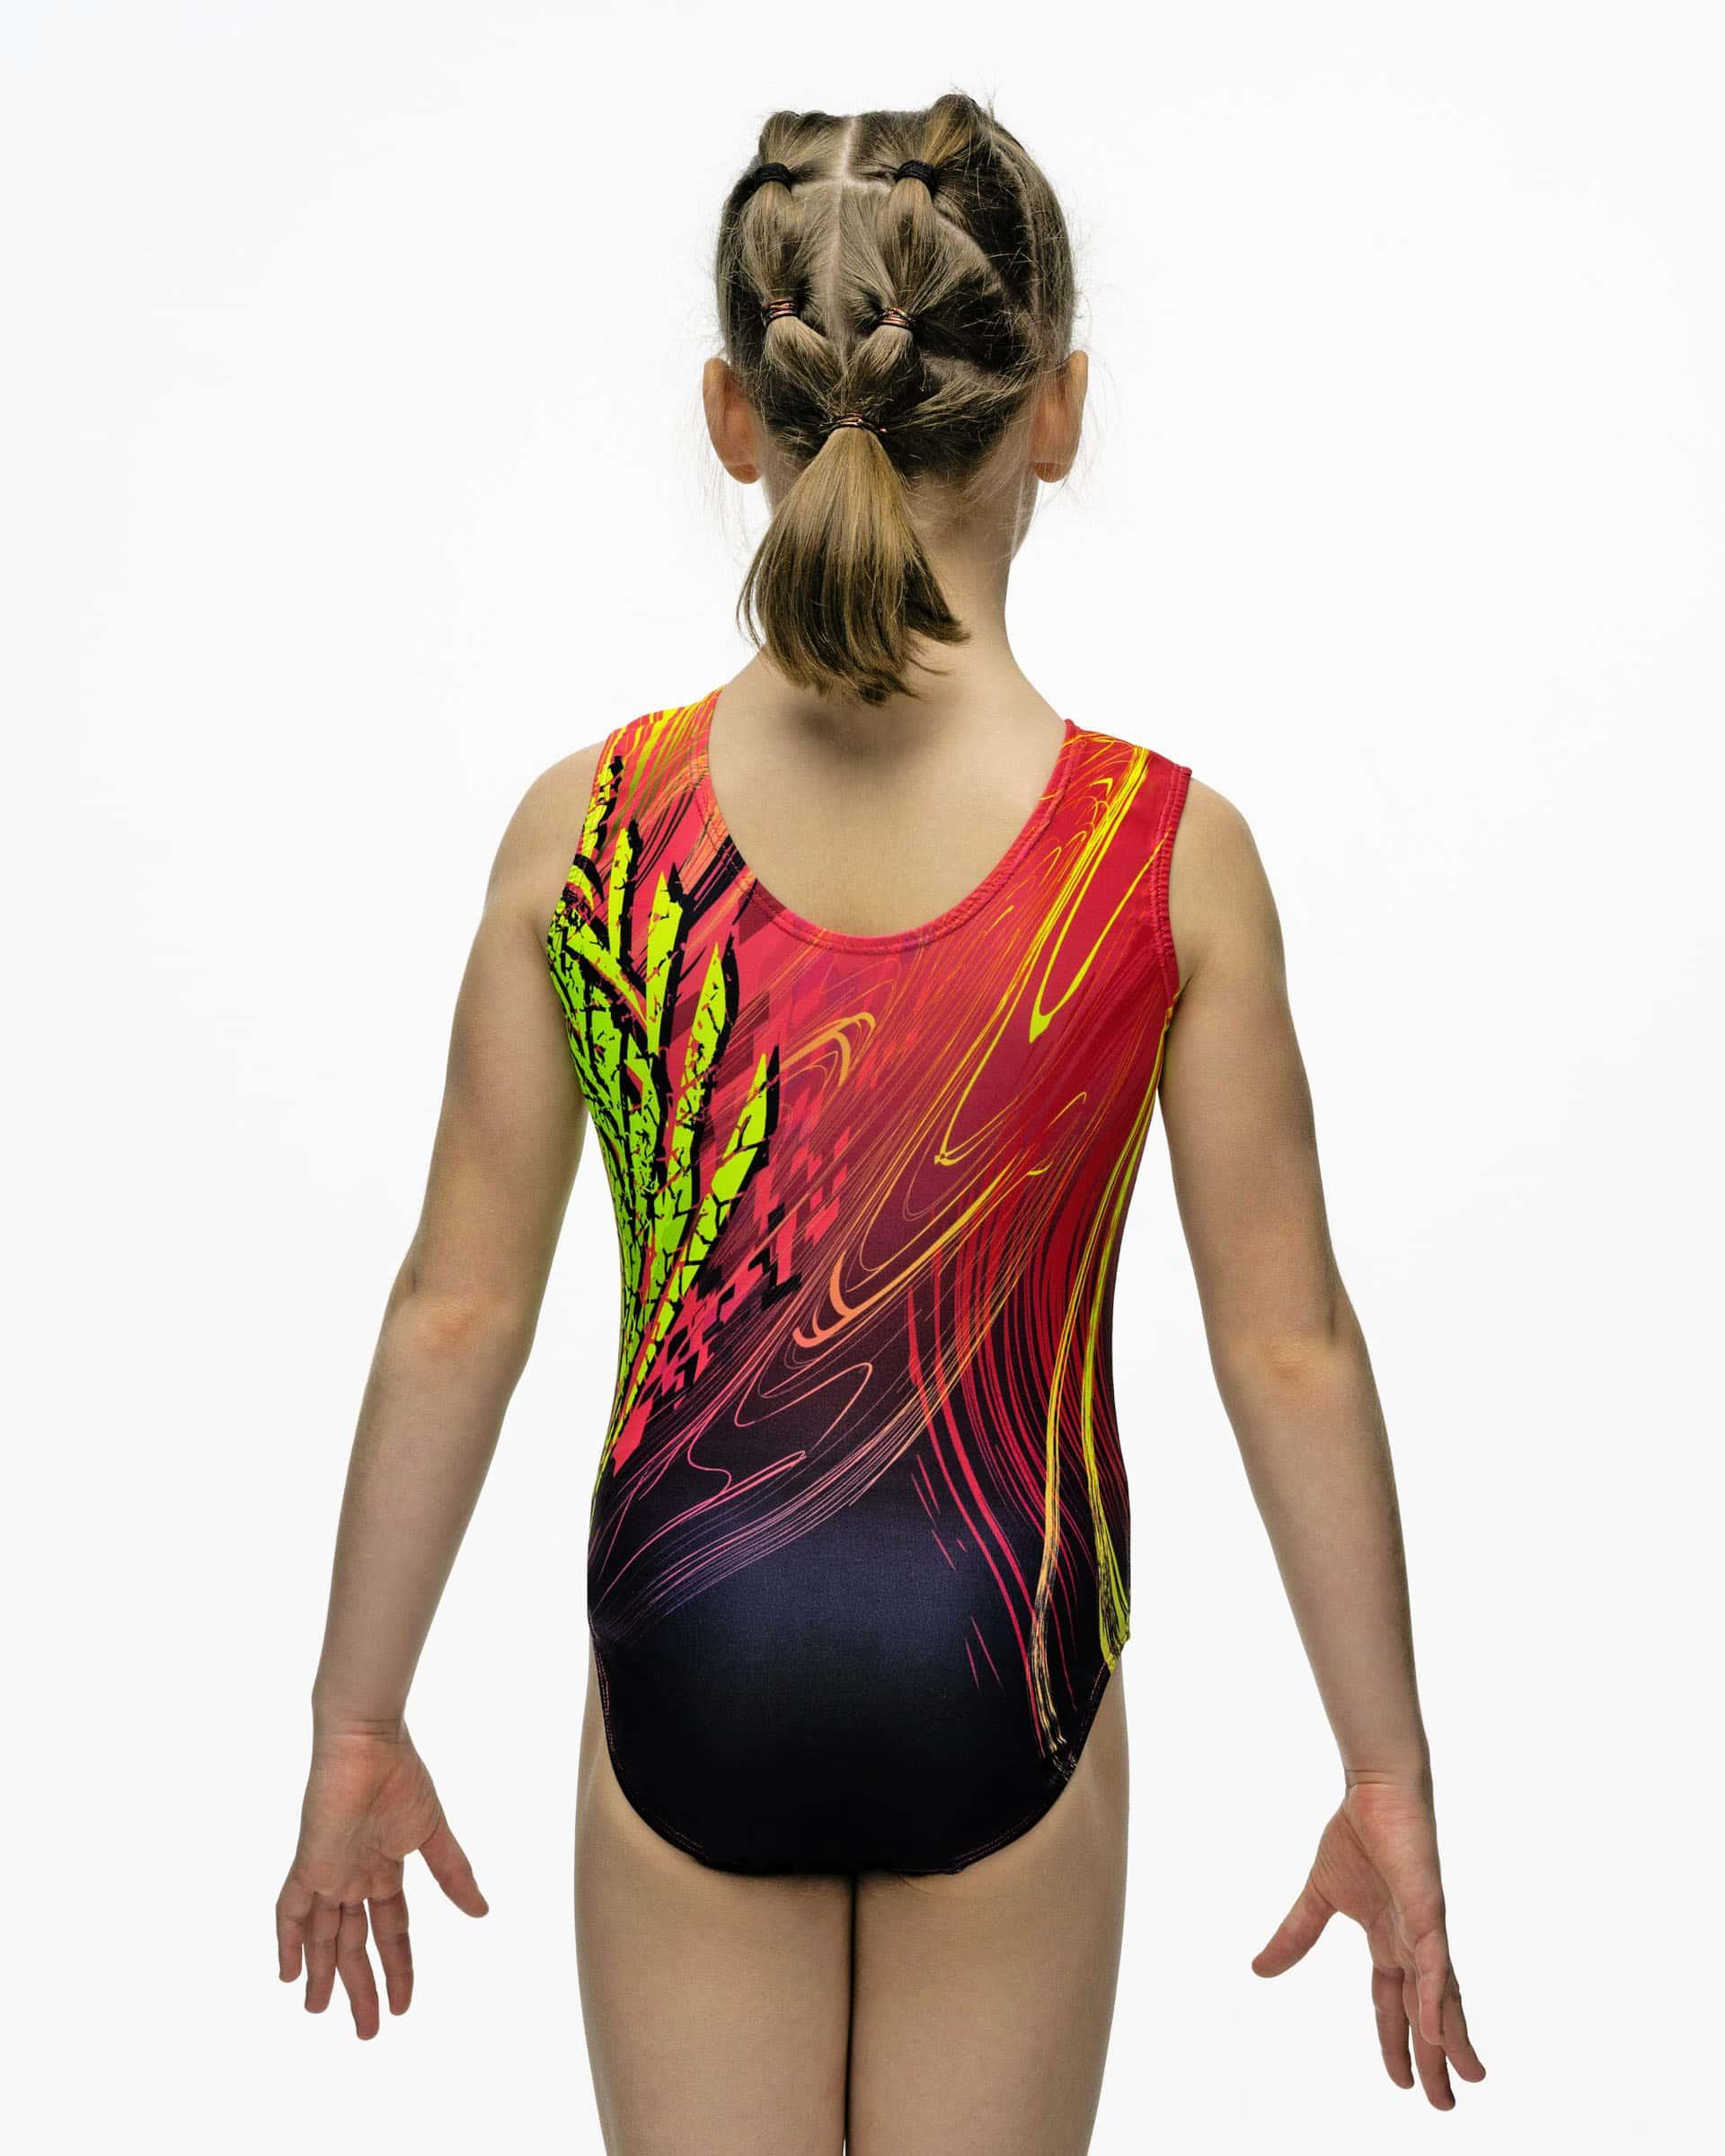 Купальник женский для спортивной гимнастики GK Sport 133 жар-птица красный с черным без рукава